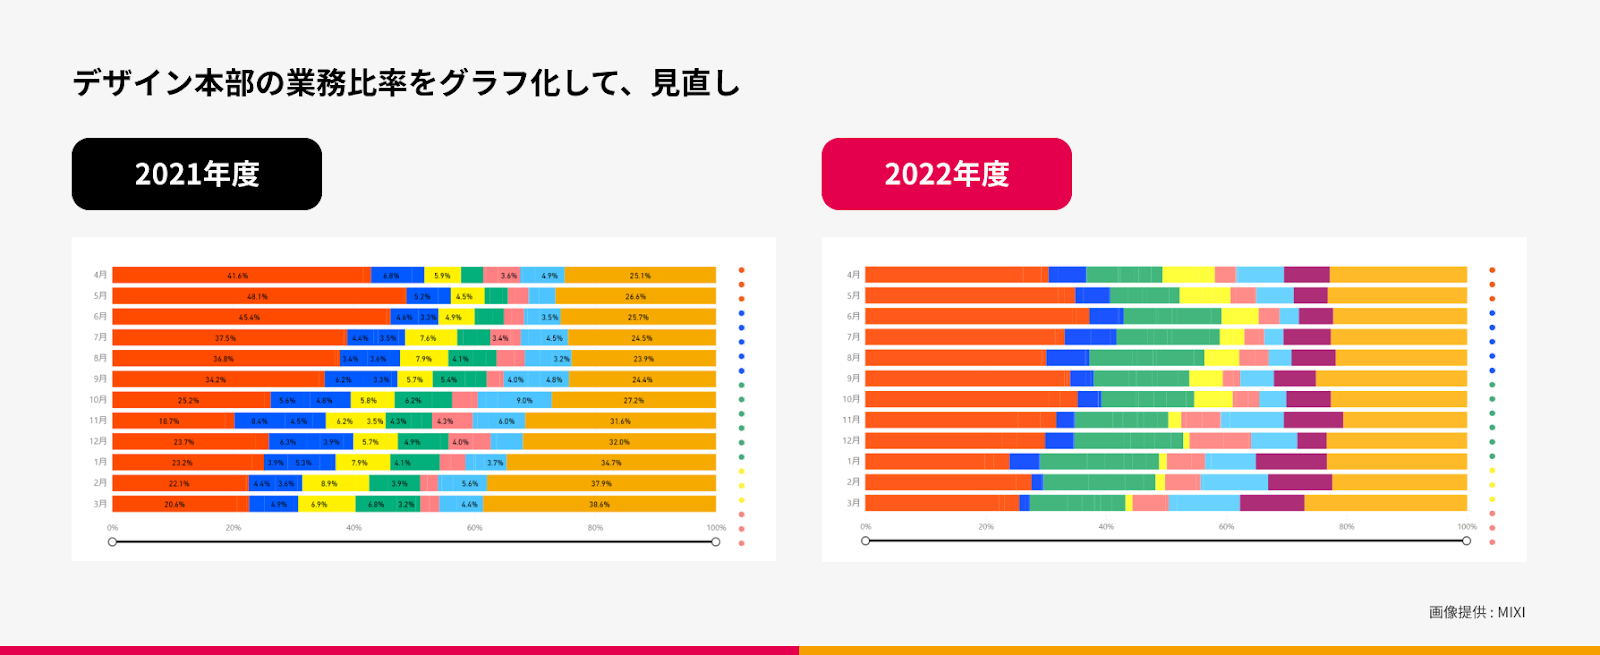 2021年度、2022年度のデザイン色の作業時間をグラフ化した画像